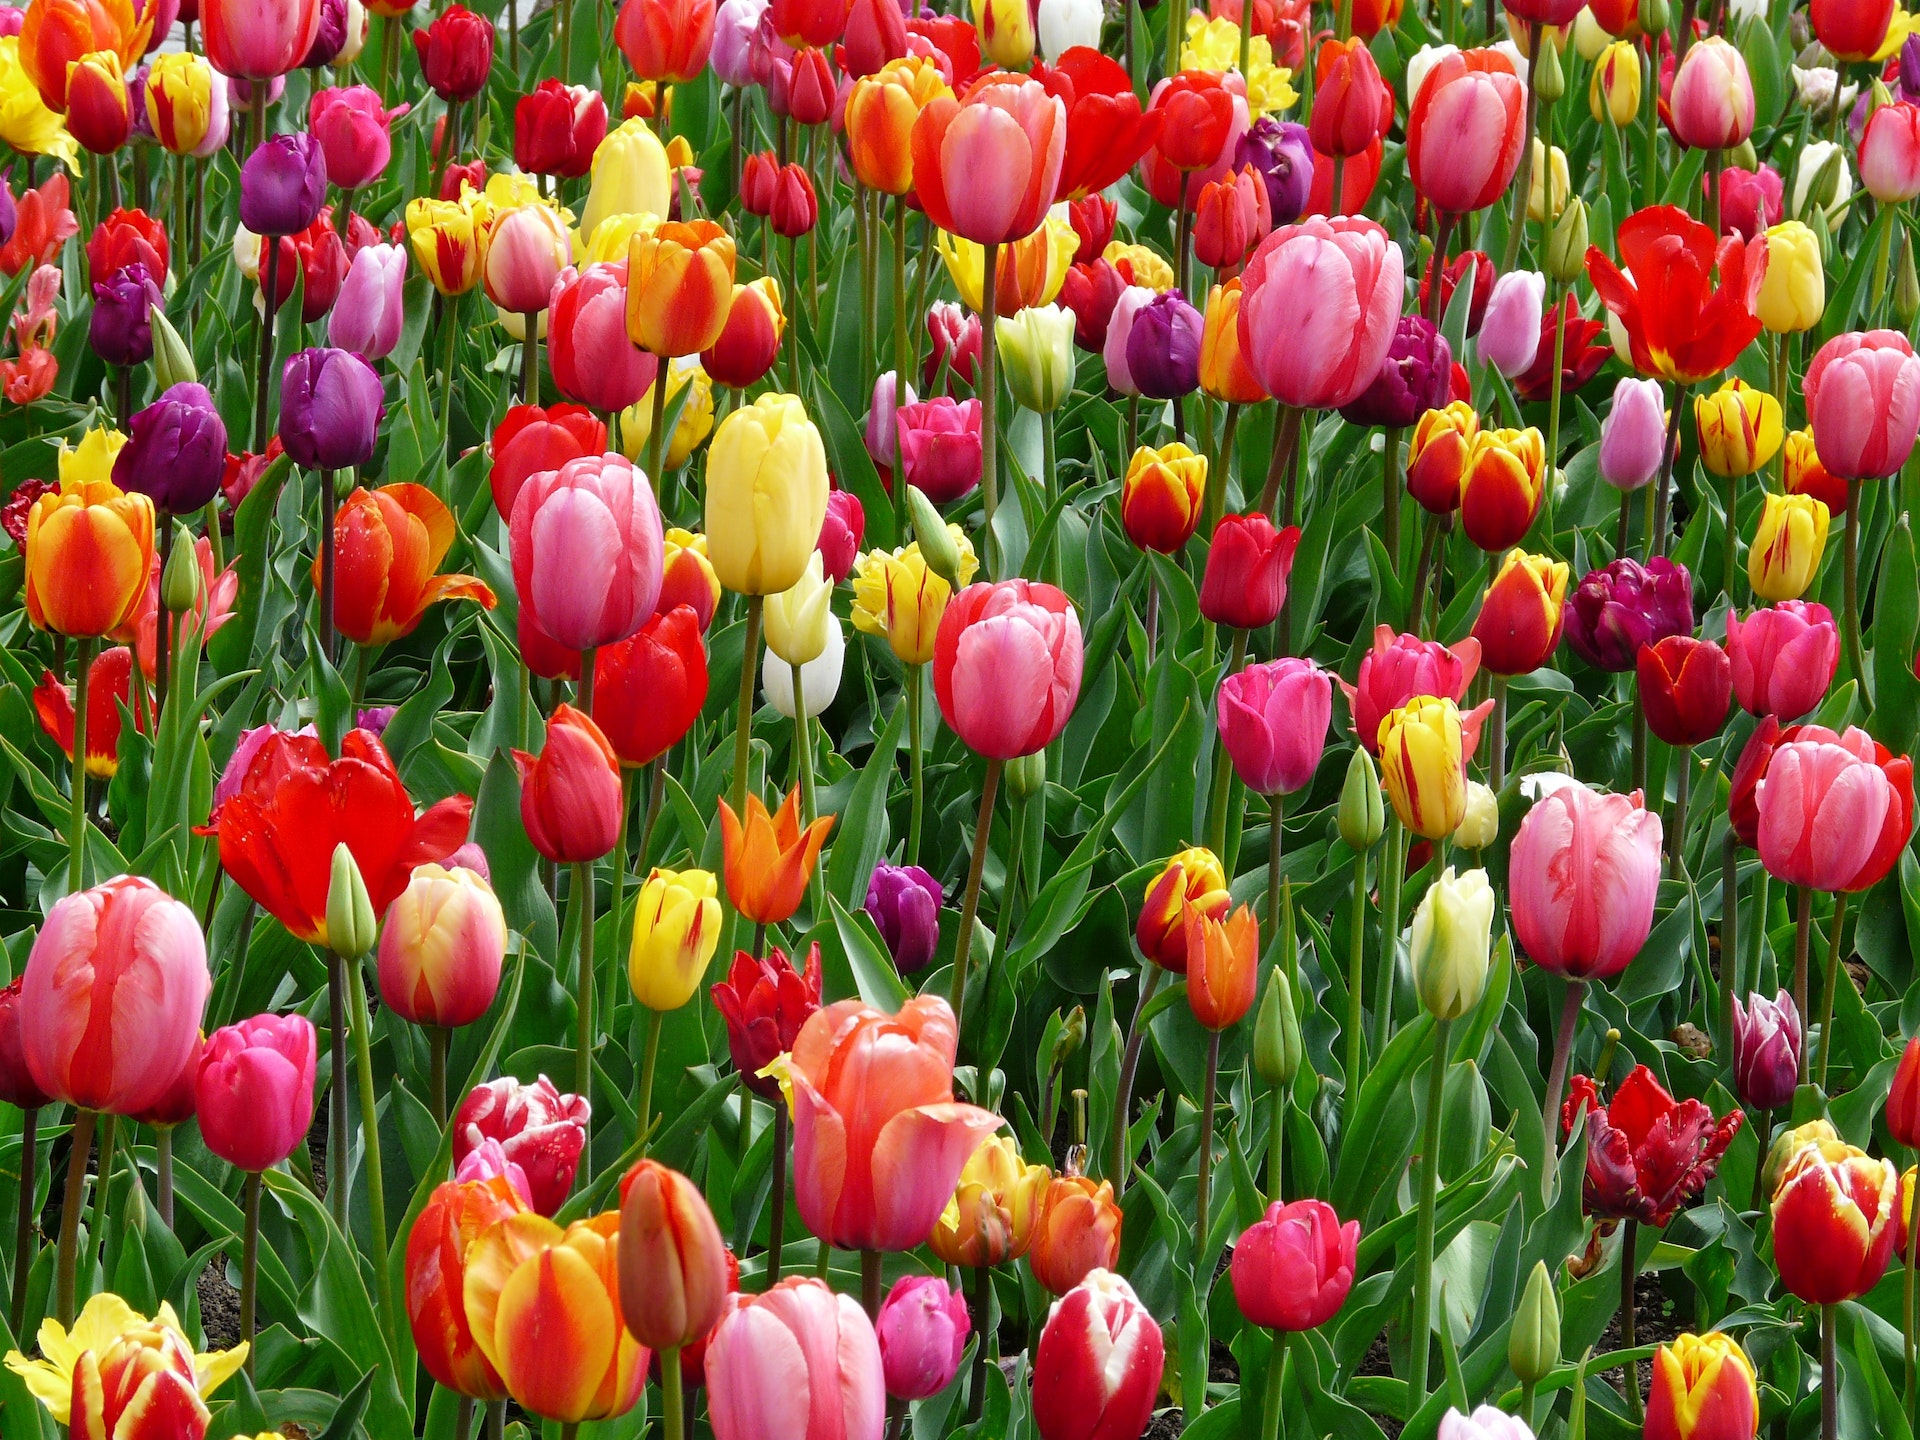 Con la sua deliziosa forma e i colori sgargianti, il tulipano è uno dei fiori prediletti per decorare balconi e giardini: come e quando piantare i bulbi.